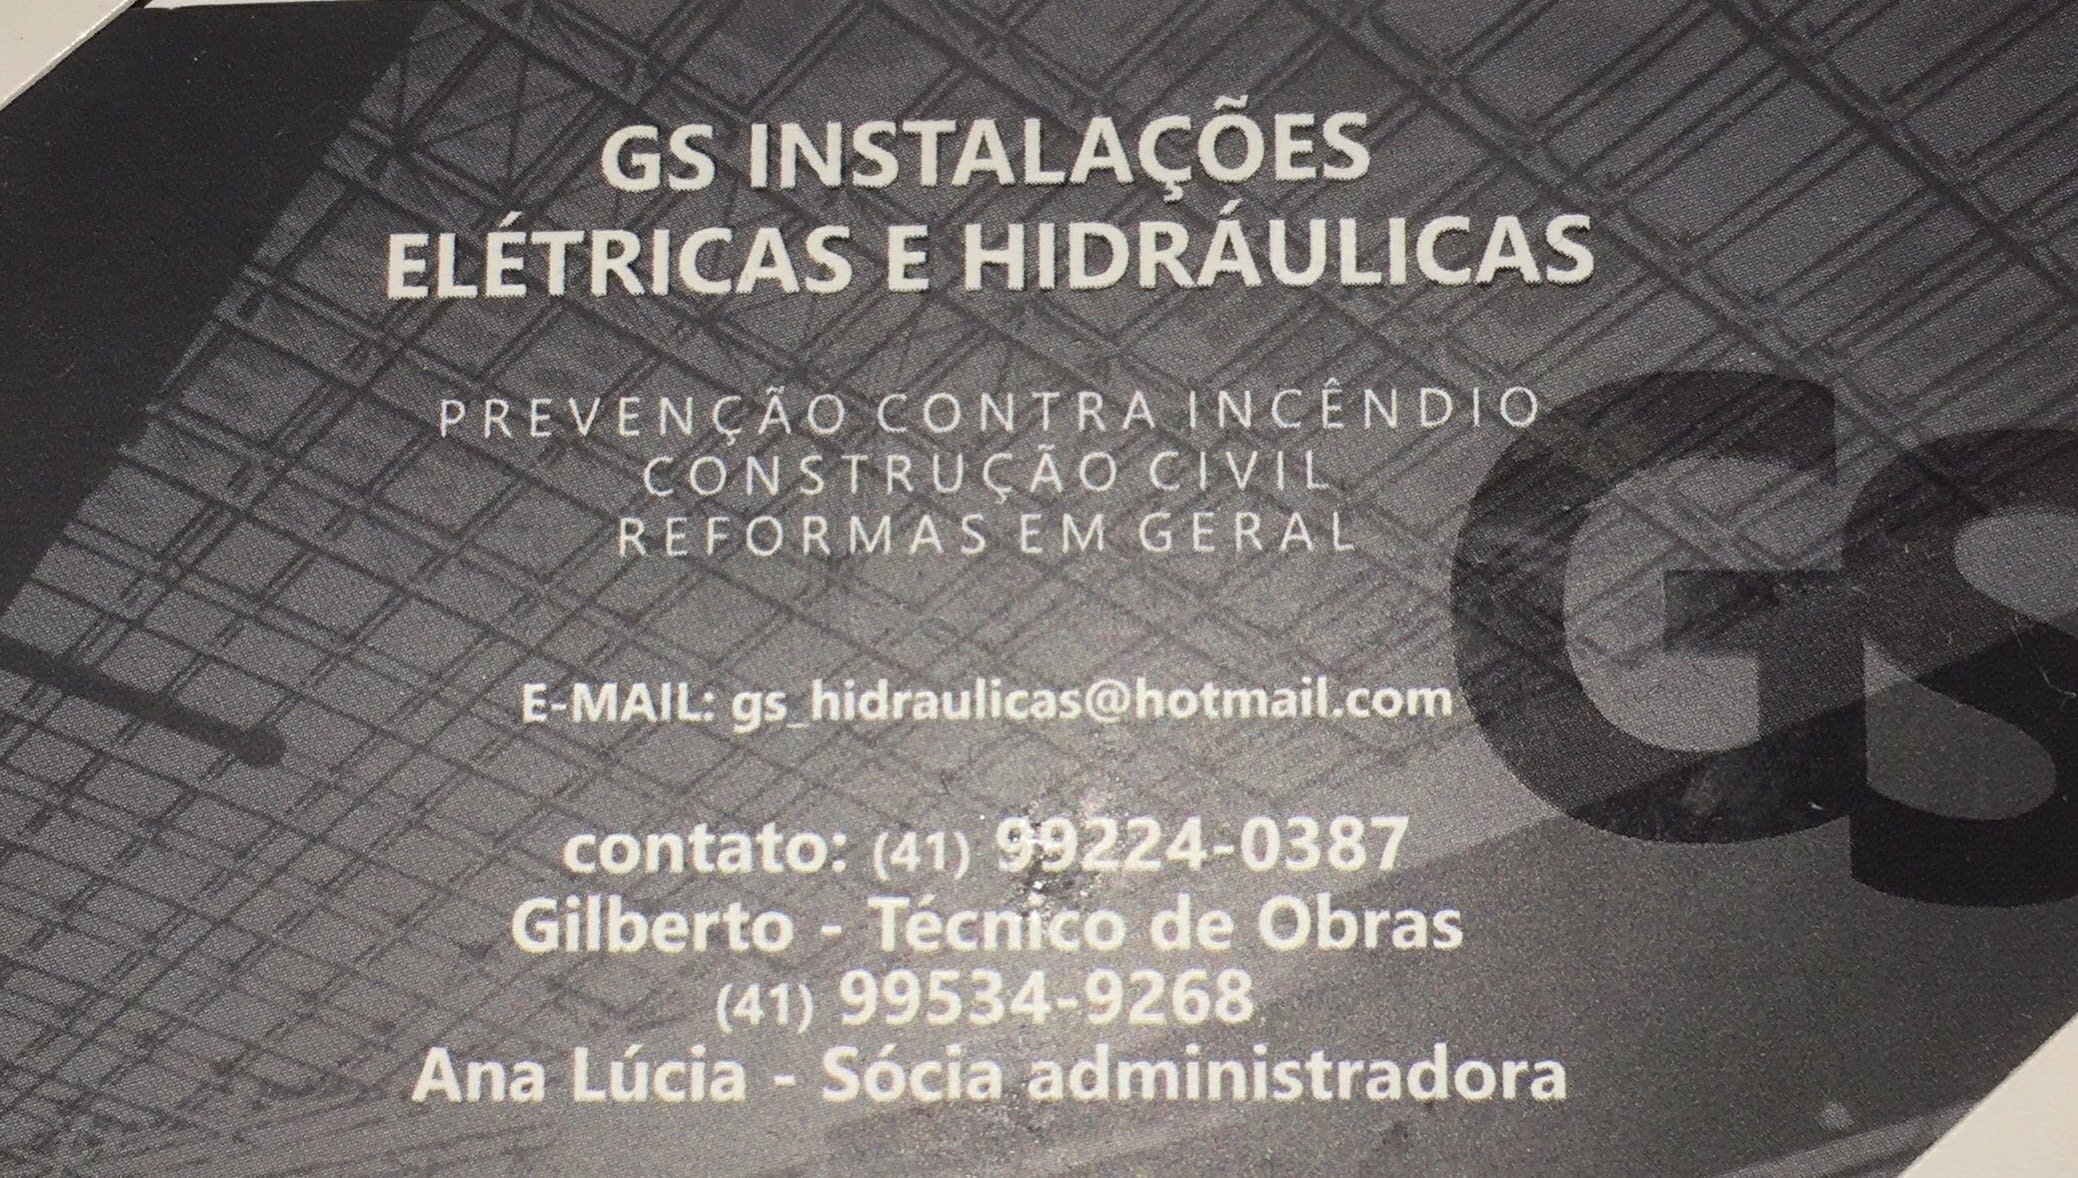 GS Instalações Elétricas e Hidráulicas